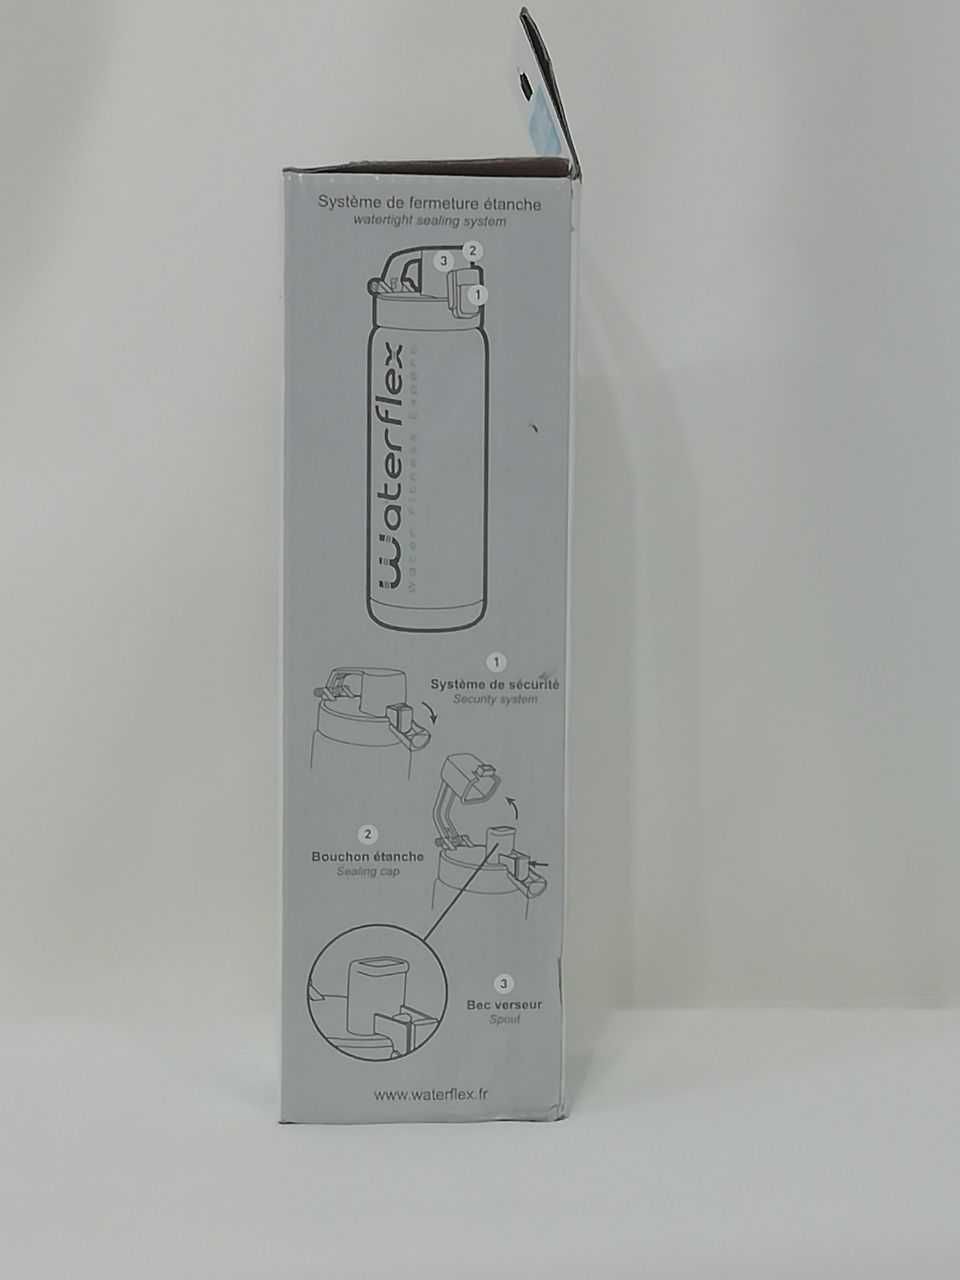 Waterflex спортивна бутилка для гарячої та холодної рідини з ОАЕ